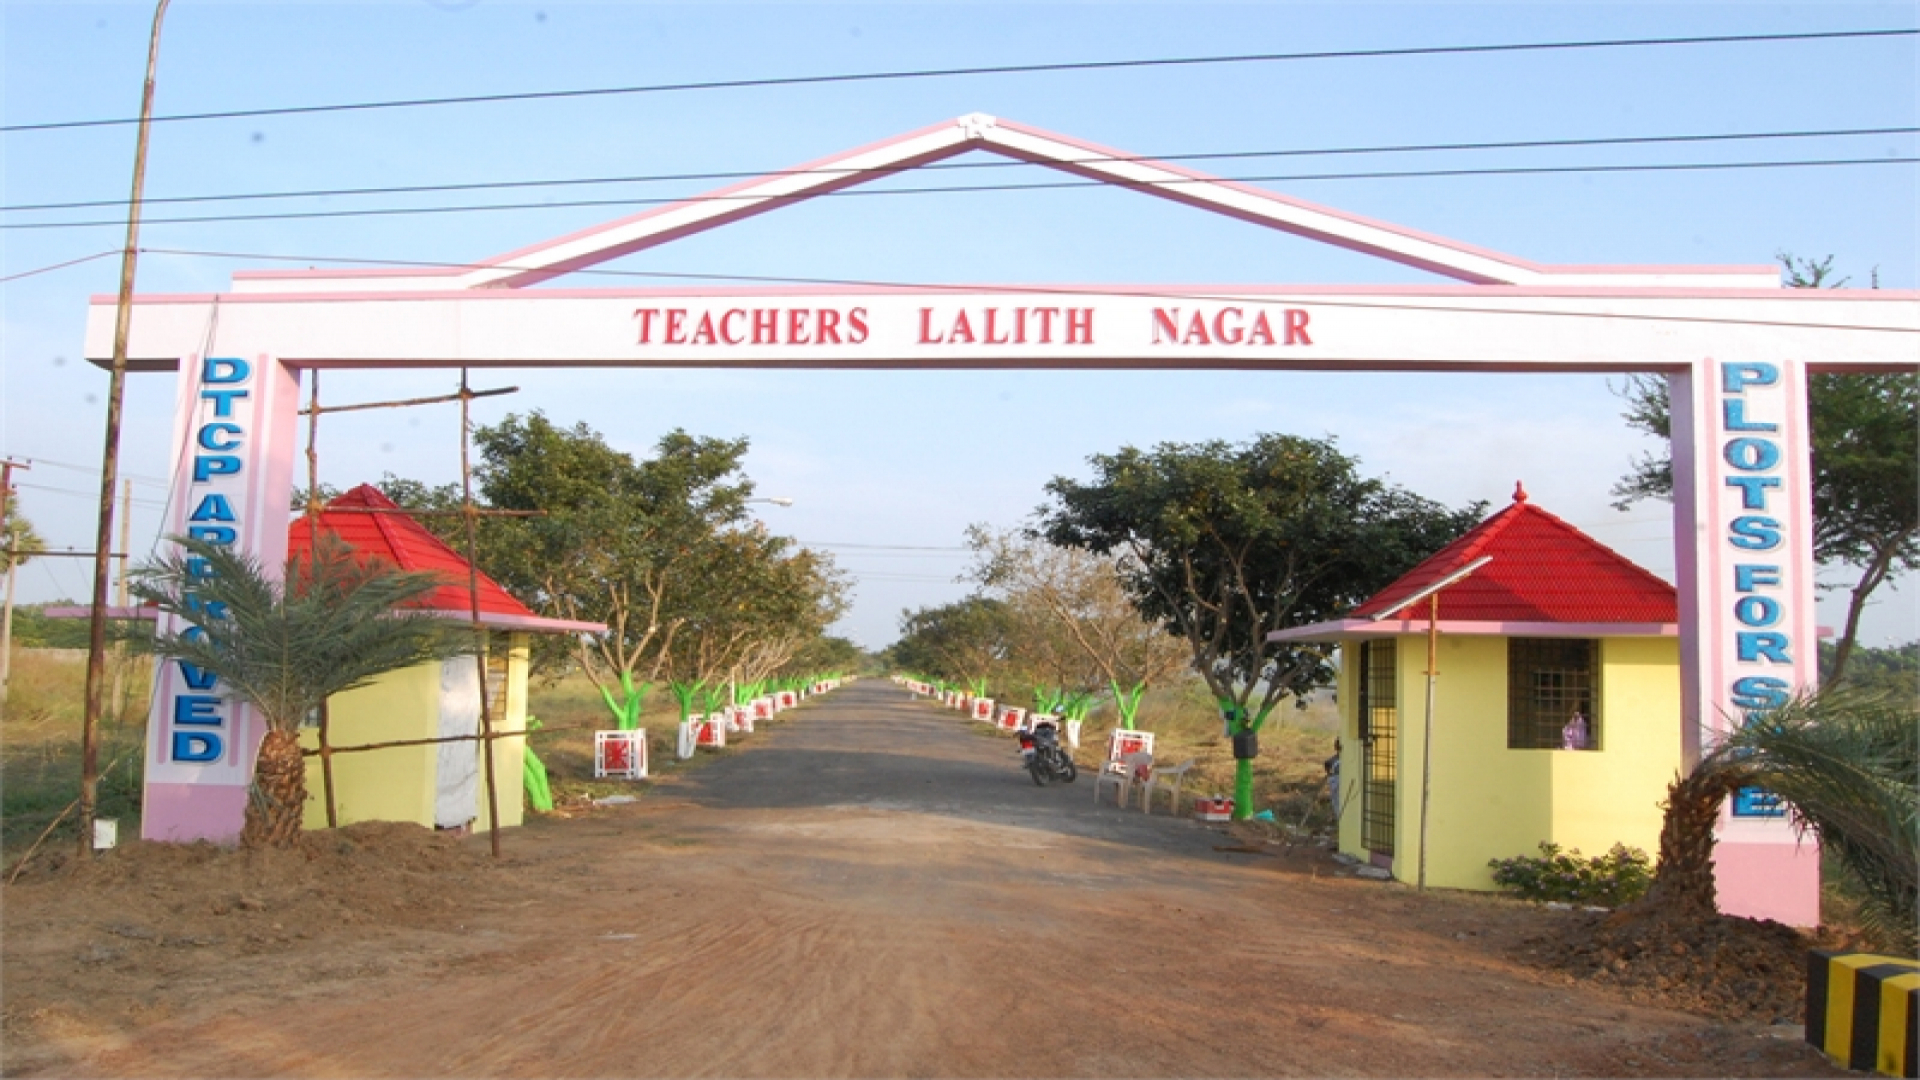 Teachers Lalith Nagar